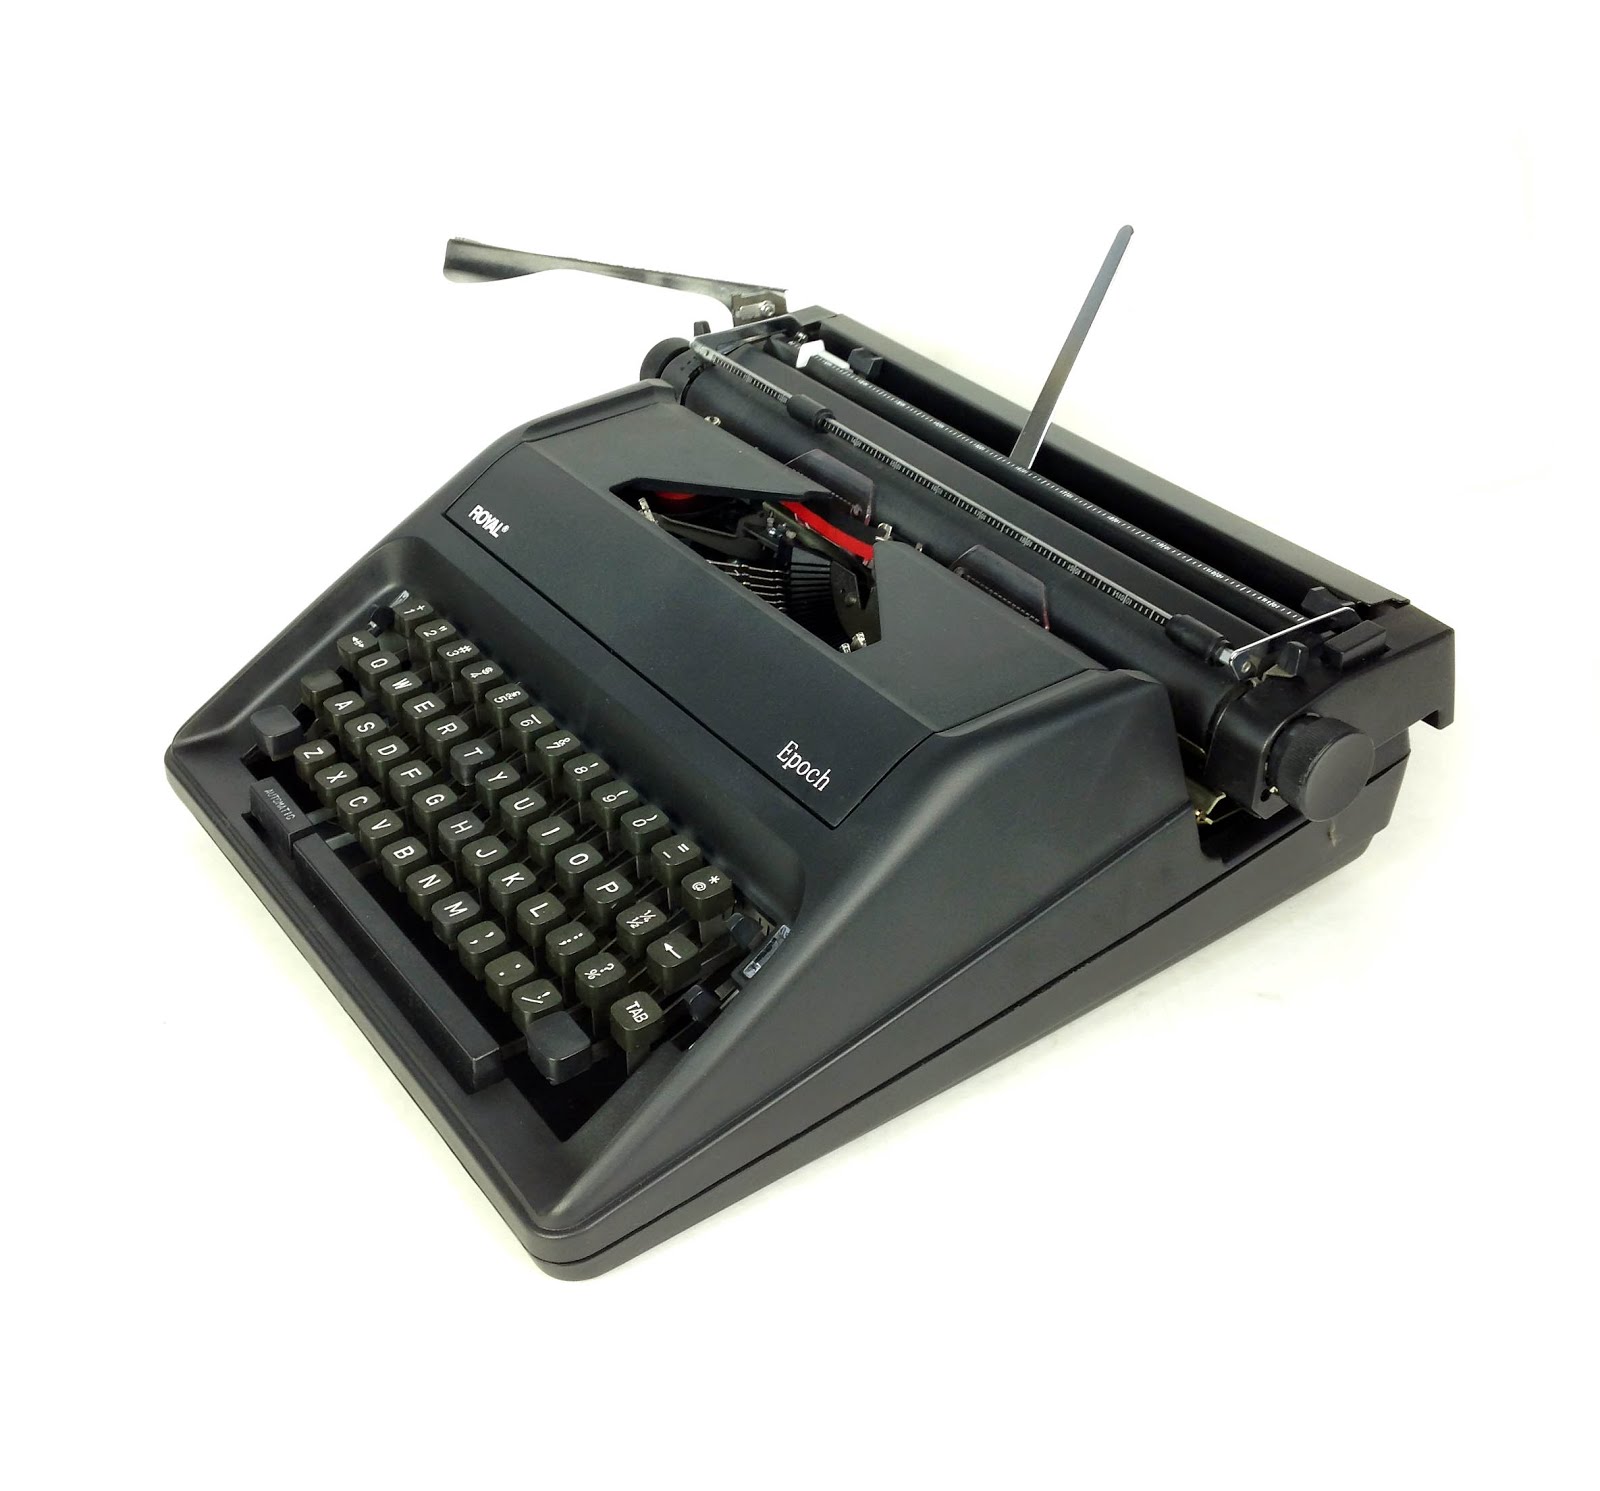 Royal Consumer Classic Retro Manual Typewriter (Pink)